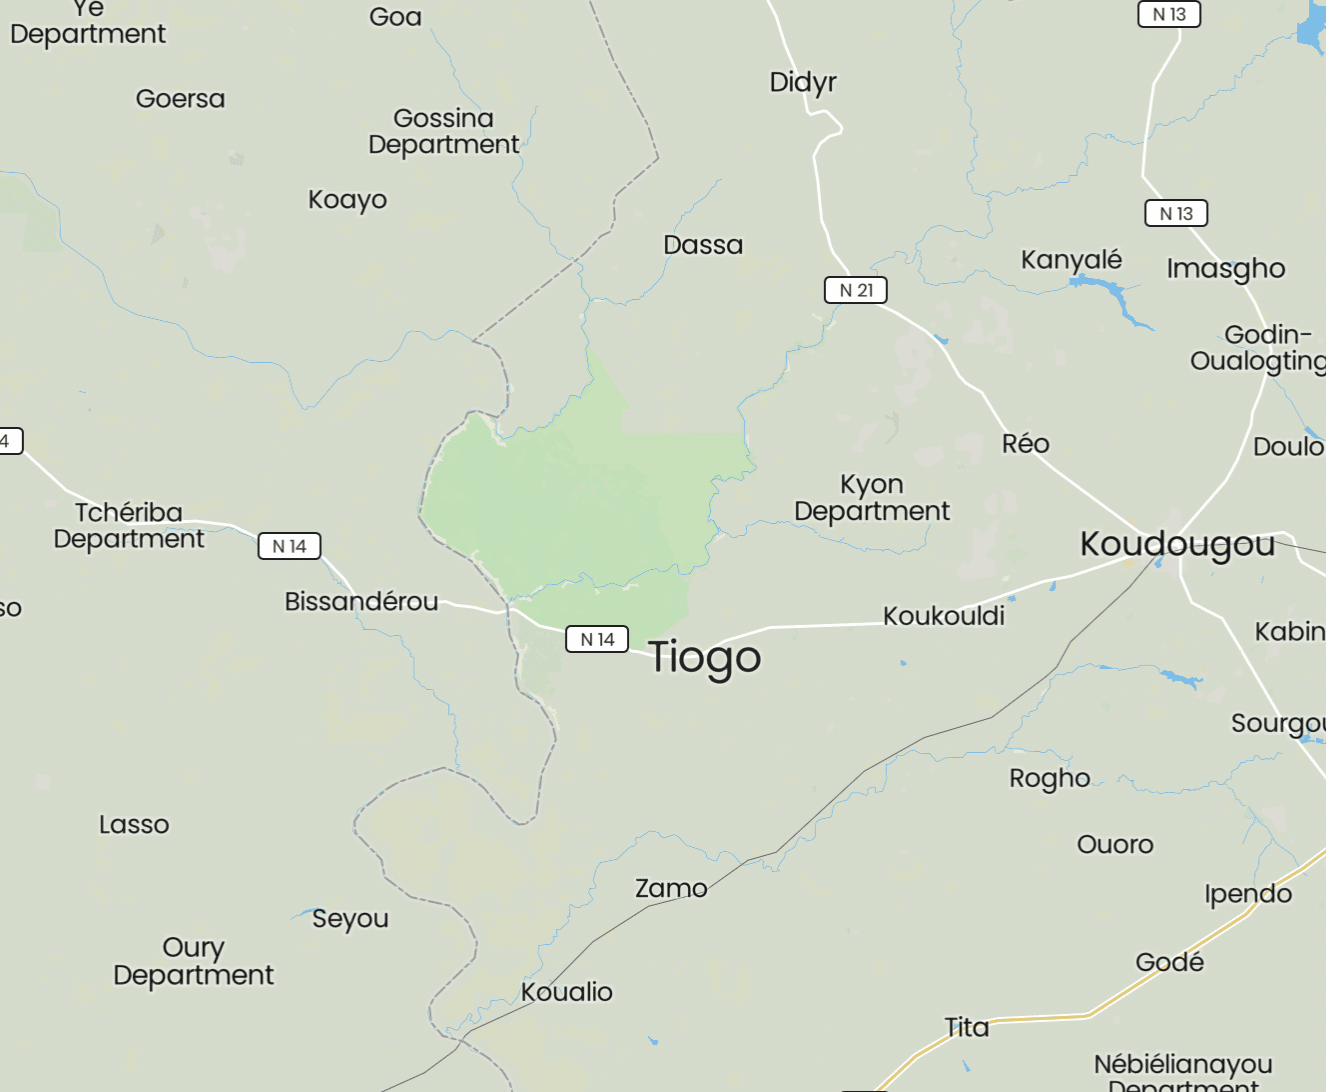 Tiogo Village, Sanguié Province, Centre-Ouest Region, Burkina Faso